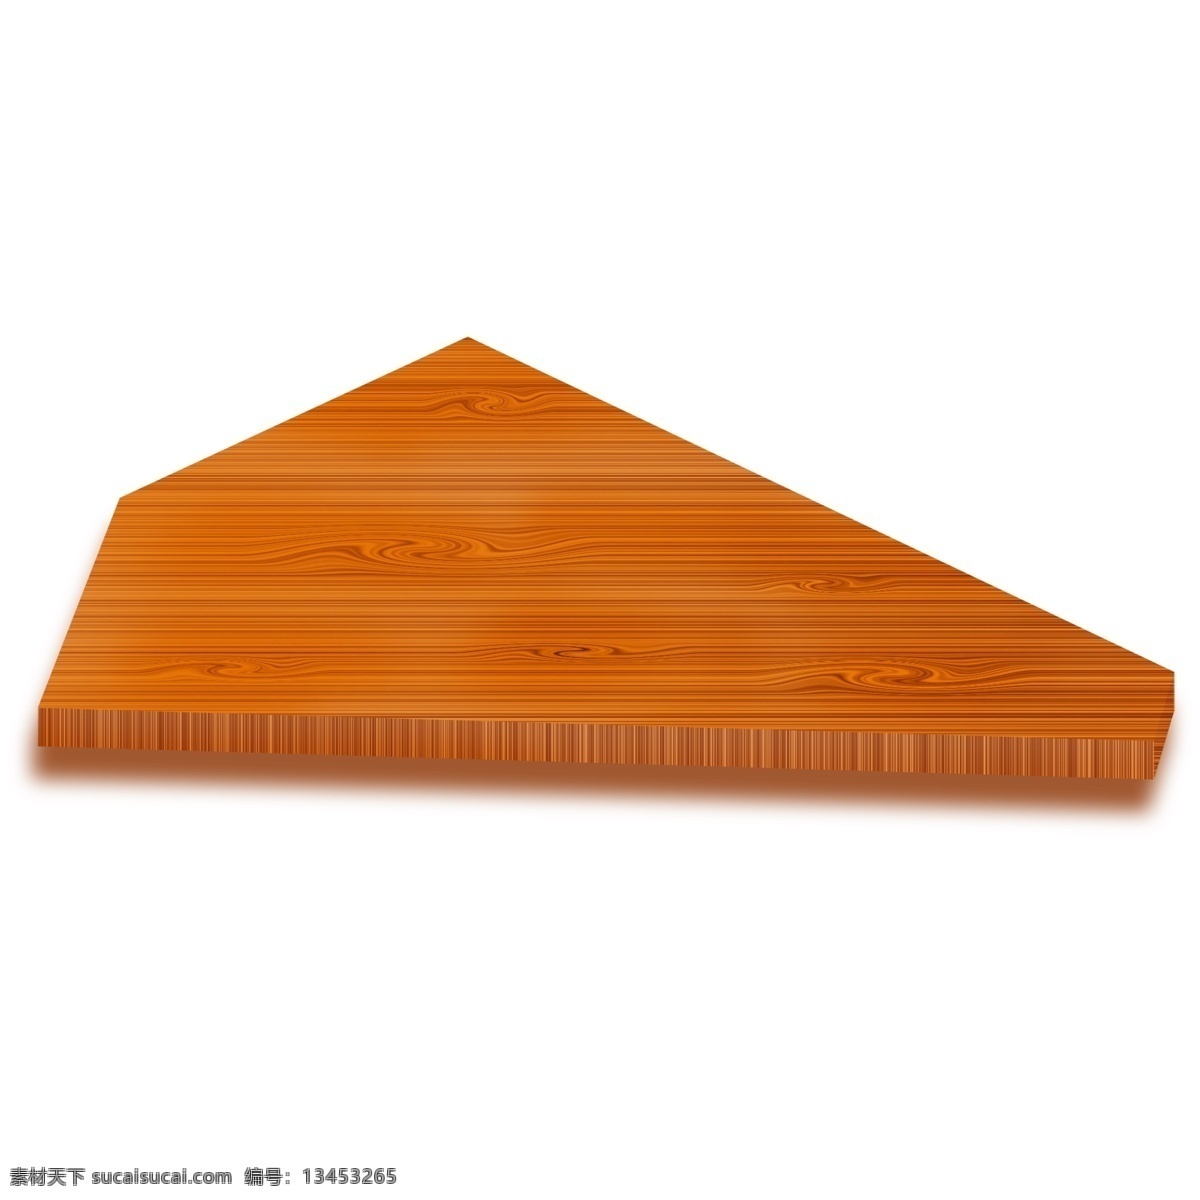 三角形 木质 木板 插画 三角的木板 卡通插画 木板插画 木纹插画 木质插画 实木产品 橙色的木板